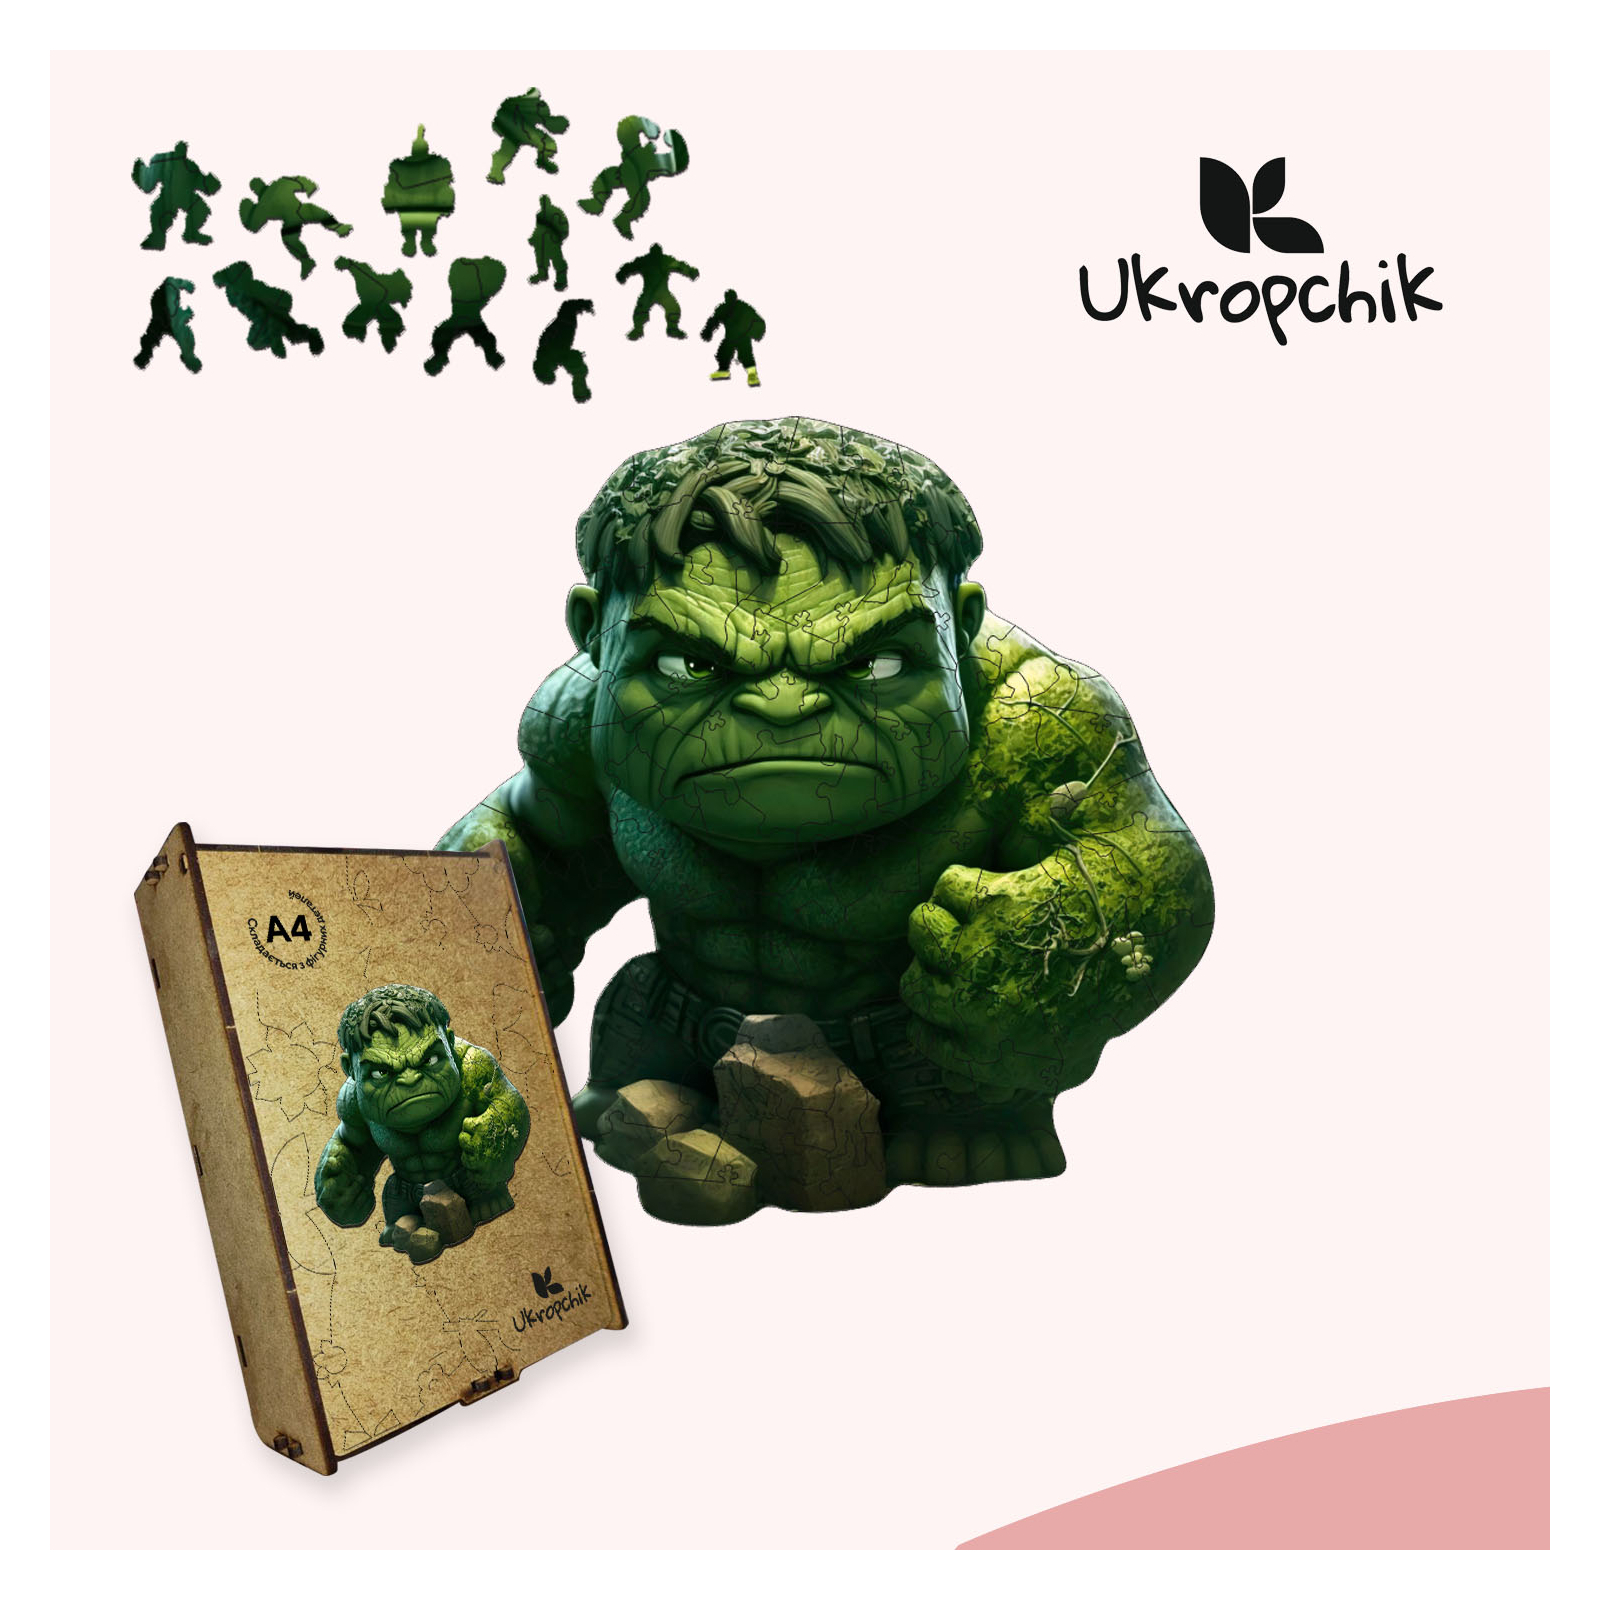 Пазл Ukropchik деревянный супергерой Халк size - L в коробке с набором-рамкой (Hulk Superhero A3) изображение 5